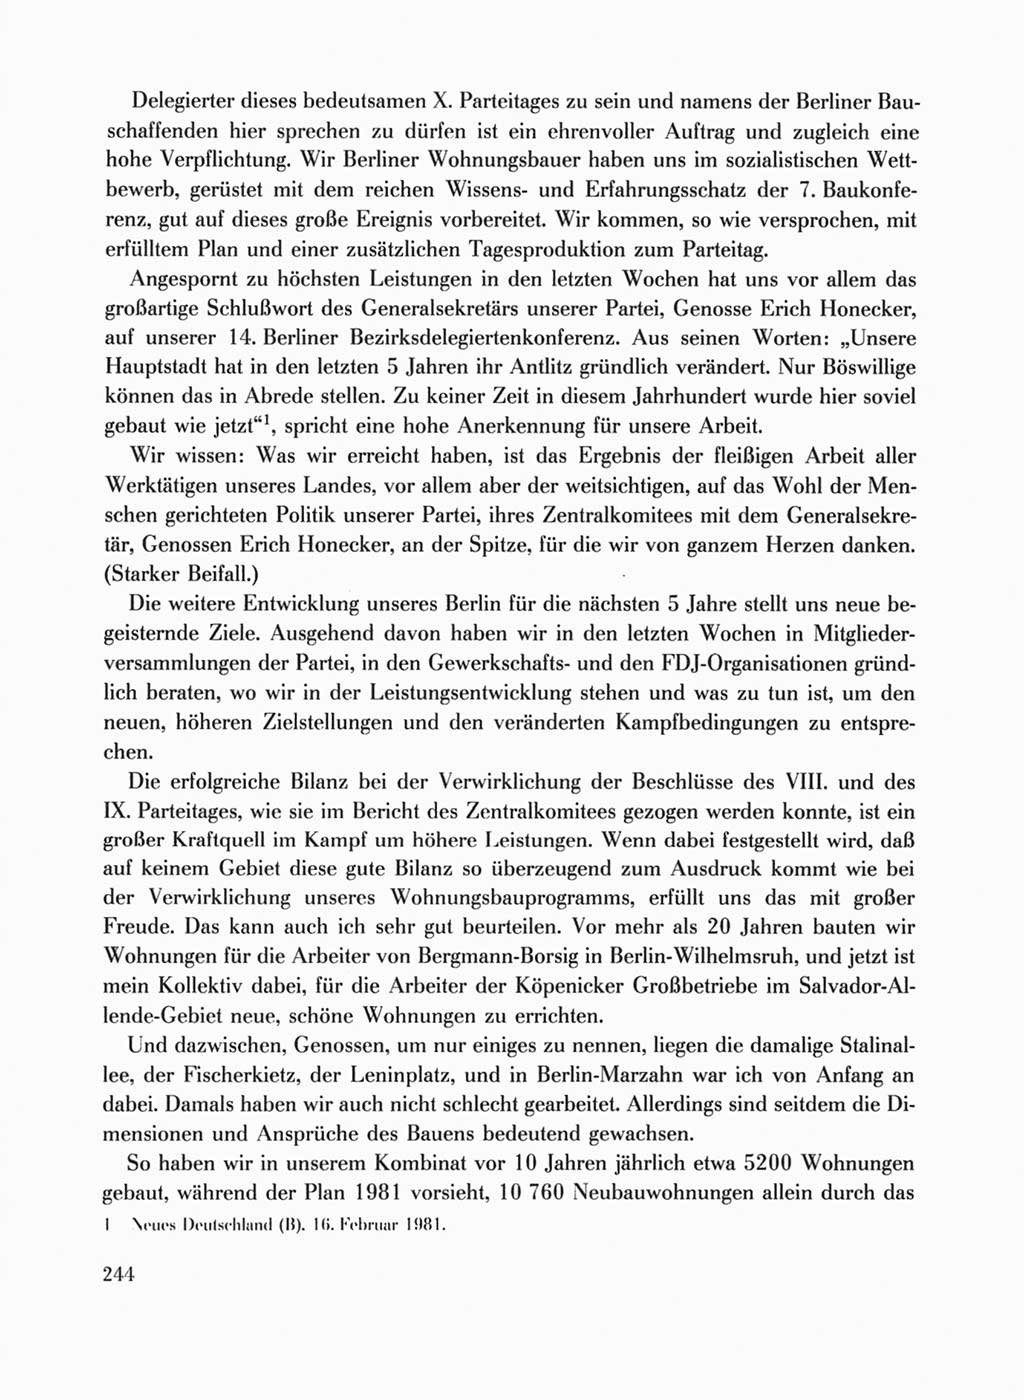 Protokoll der Verhandlungen des Ⅹ. Parteitages der Sozialistischen Einheitspartei Deutschlands (SED) [Deutsche Demokratische Republik (DDR)] 1981, Band 1, Seite 244 (Prot. Verh. Ⅹ. PT SED DDR 1981, Bd. 1, S. 244)